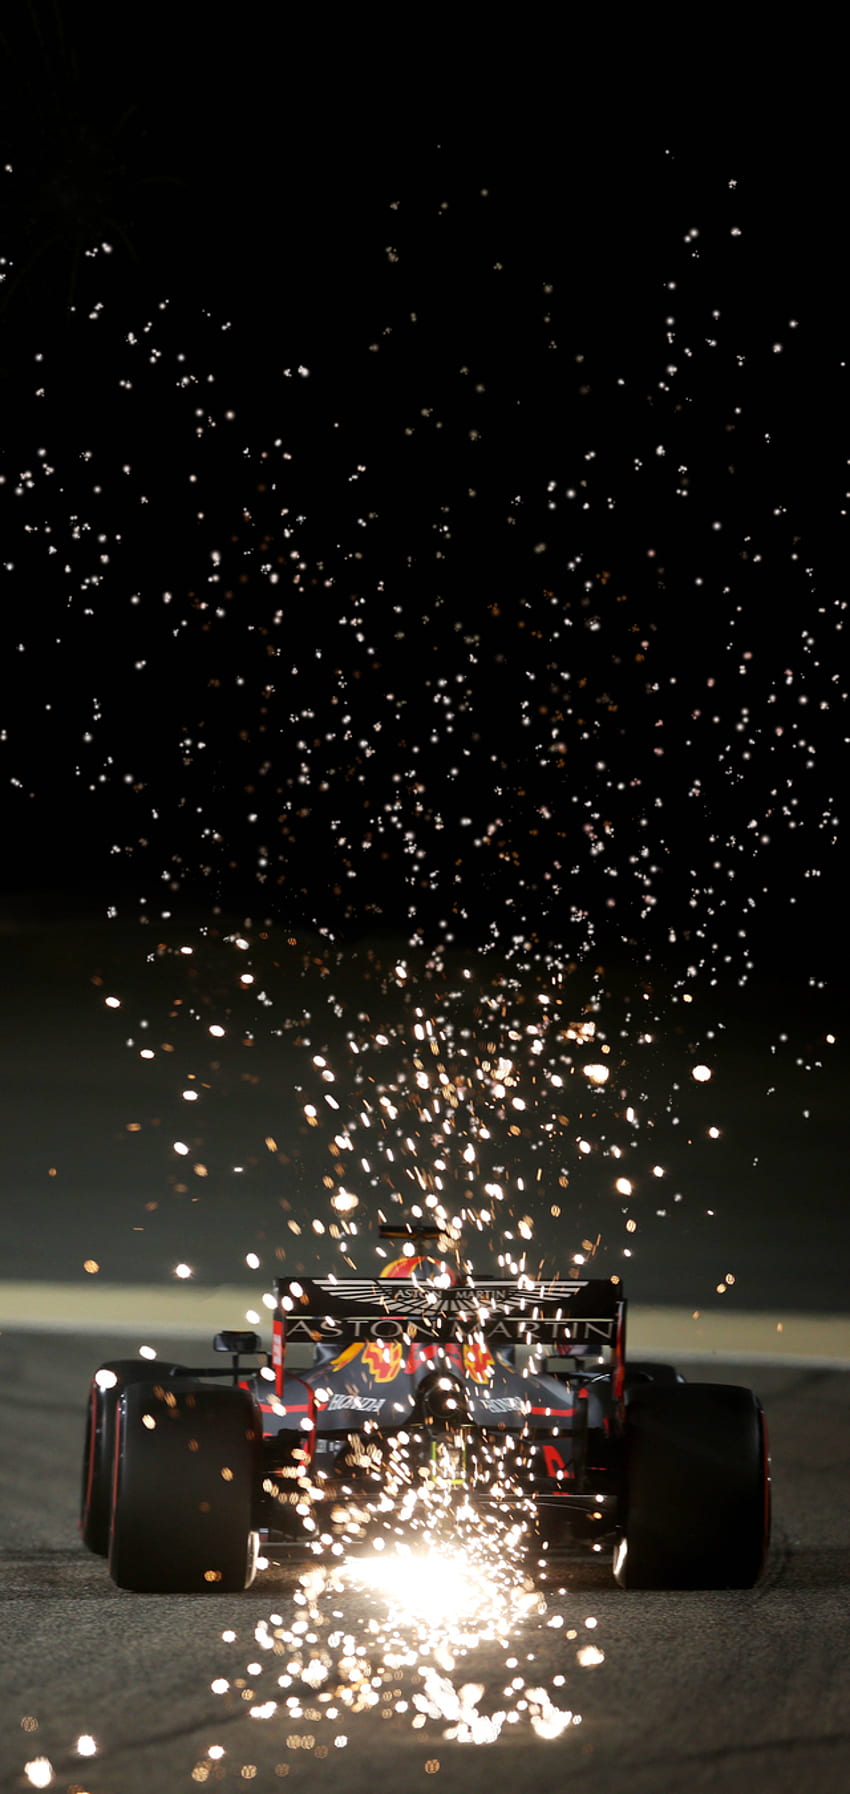 Des étincelles dans le ciel nocturne - Max Verstappen à Bahreïn - formule1 en 2020. Formule 1 iphone , Mercedes , Mclaren formule 1 Fond d'écran de téléphone HD